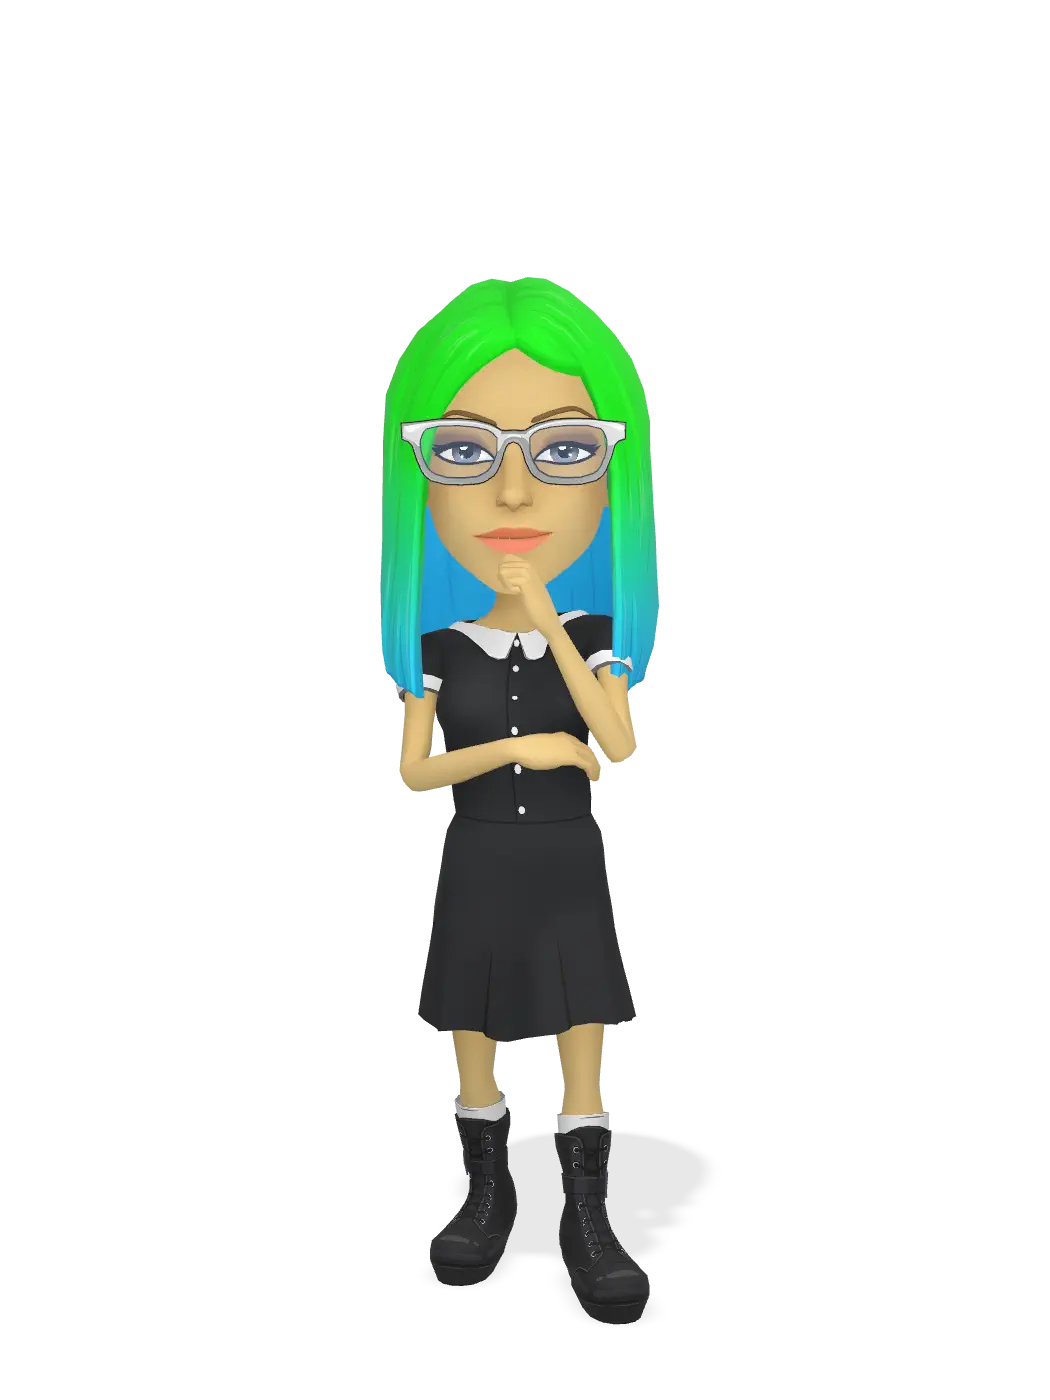 3D Bitmoji for mindillusions avatar